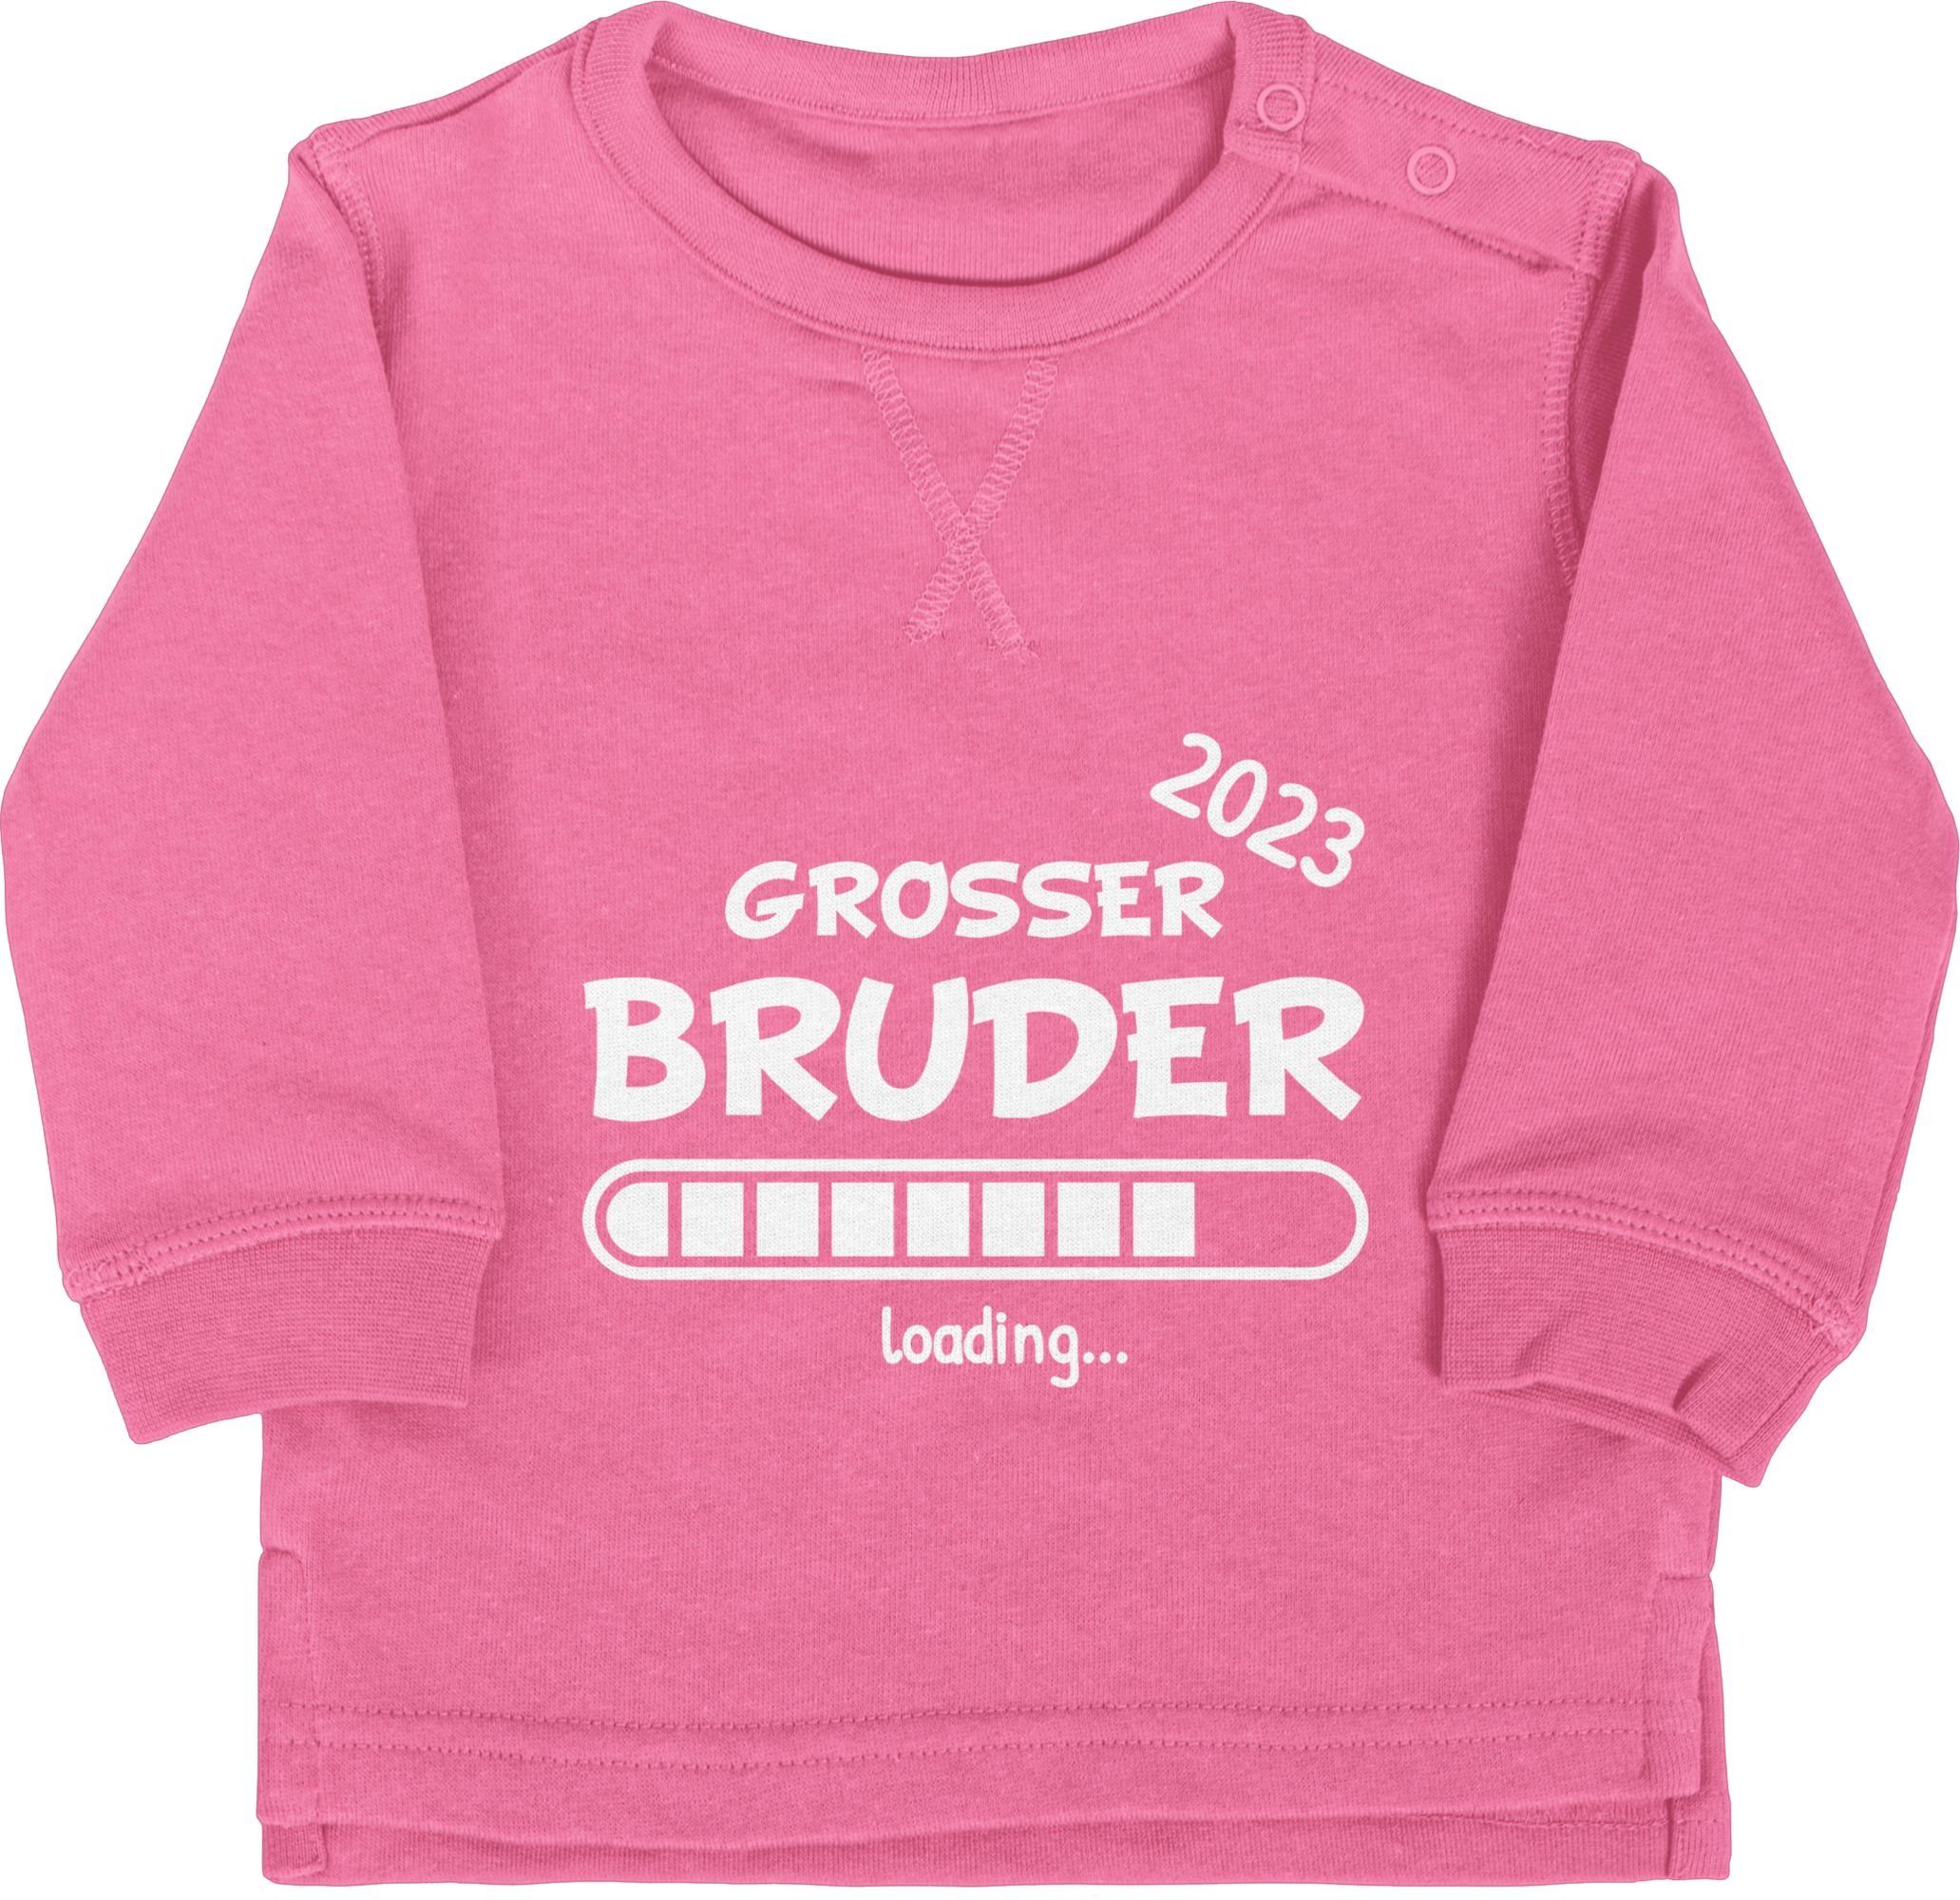 Shirtracer 3 loading Sweatshirt Pink 2023 Bruder Großer Bruder Großer